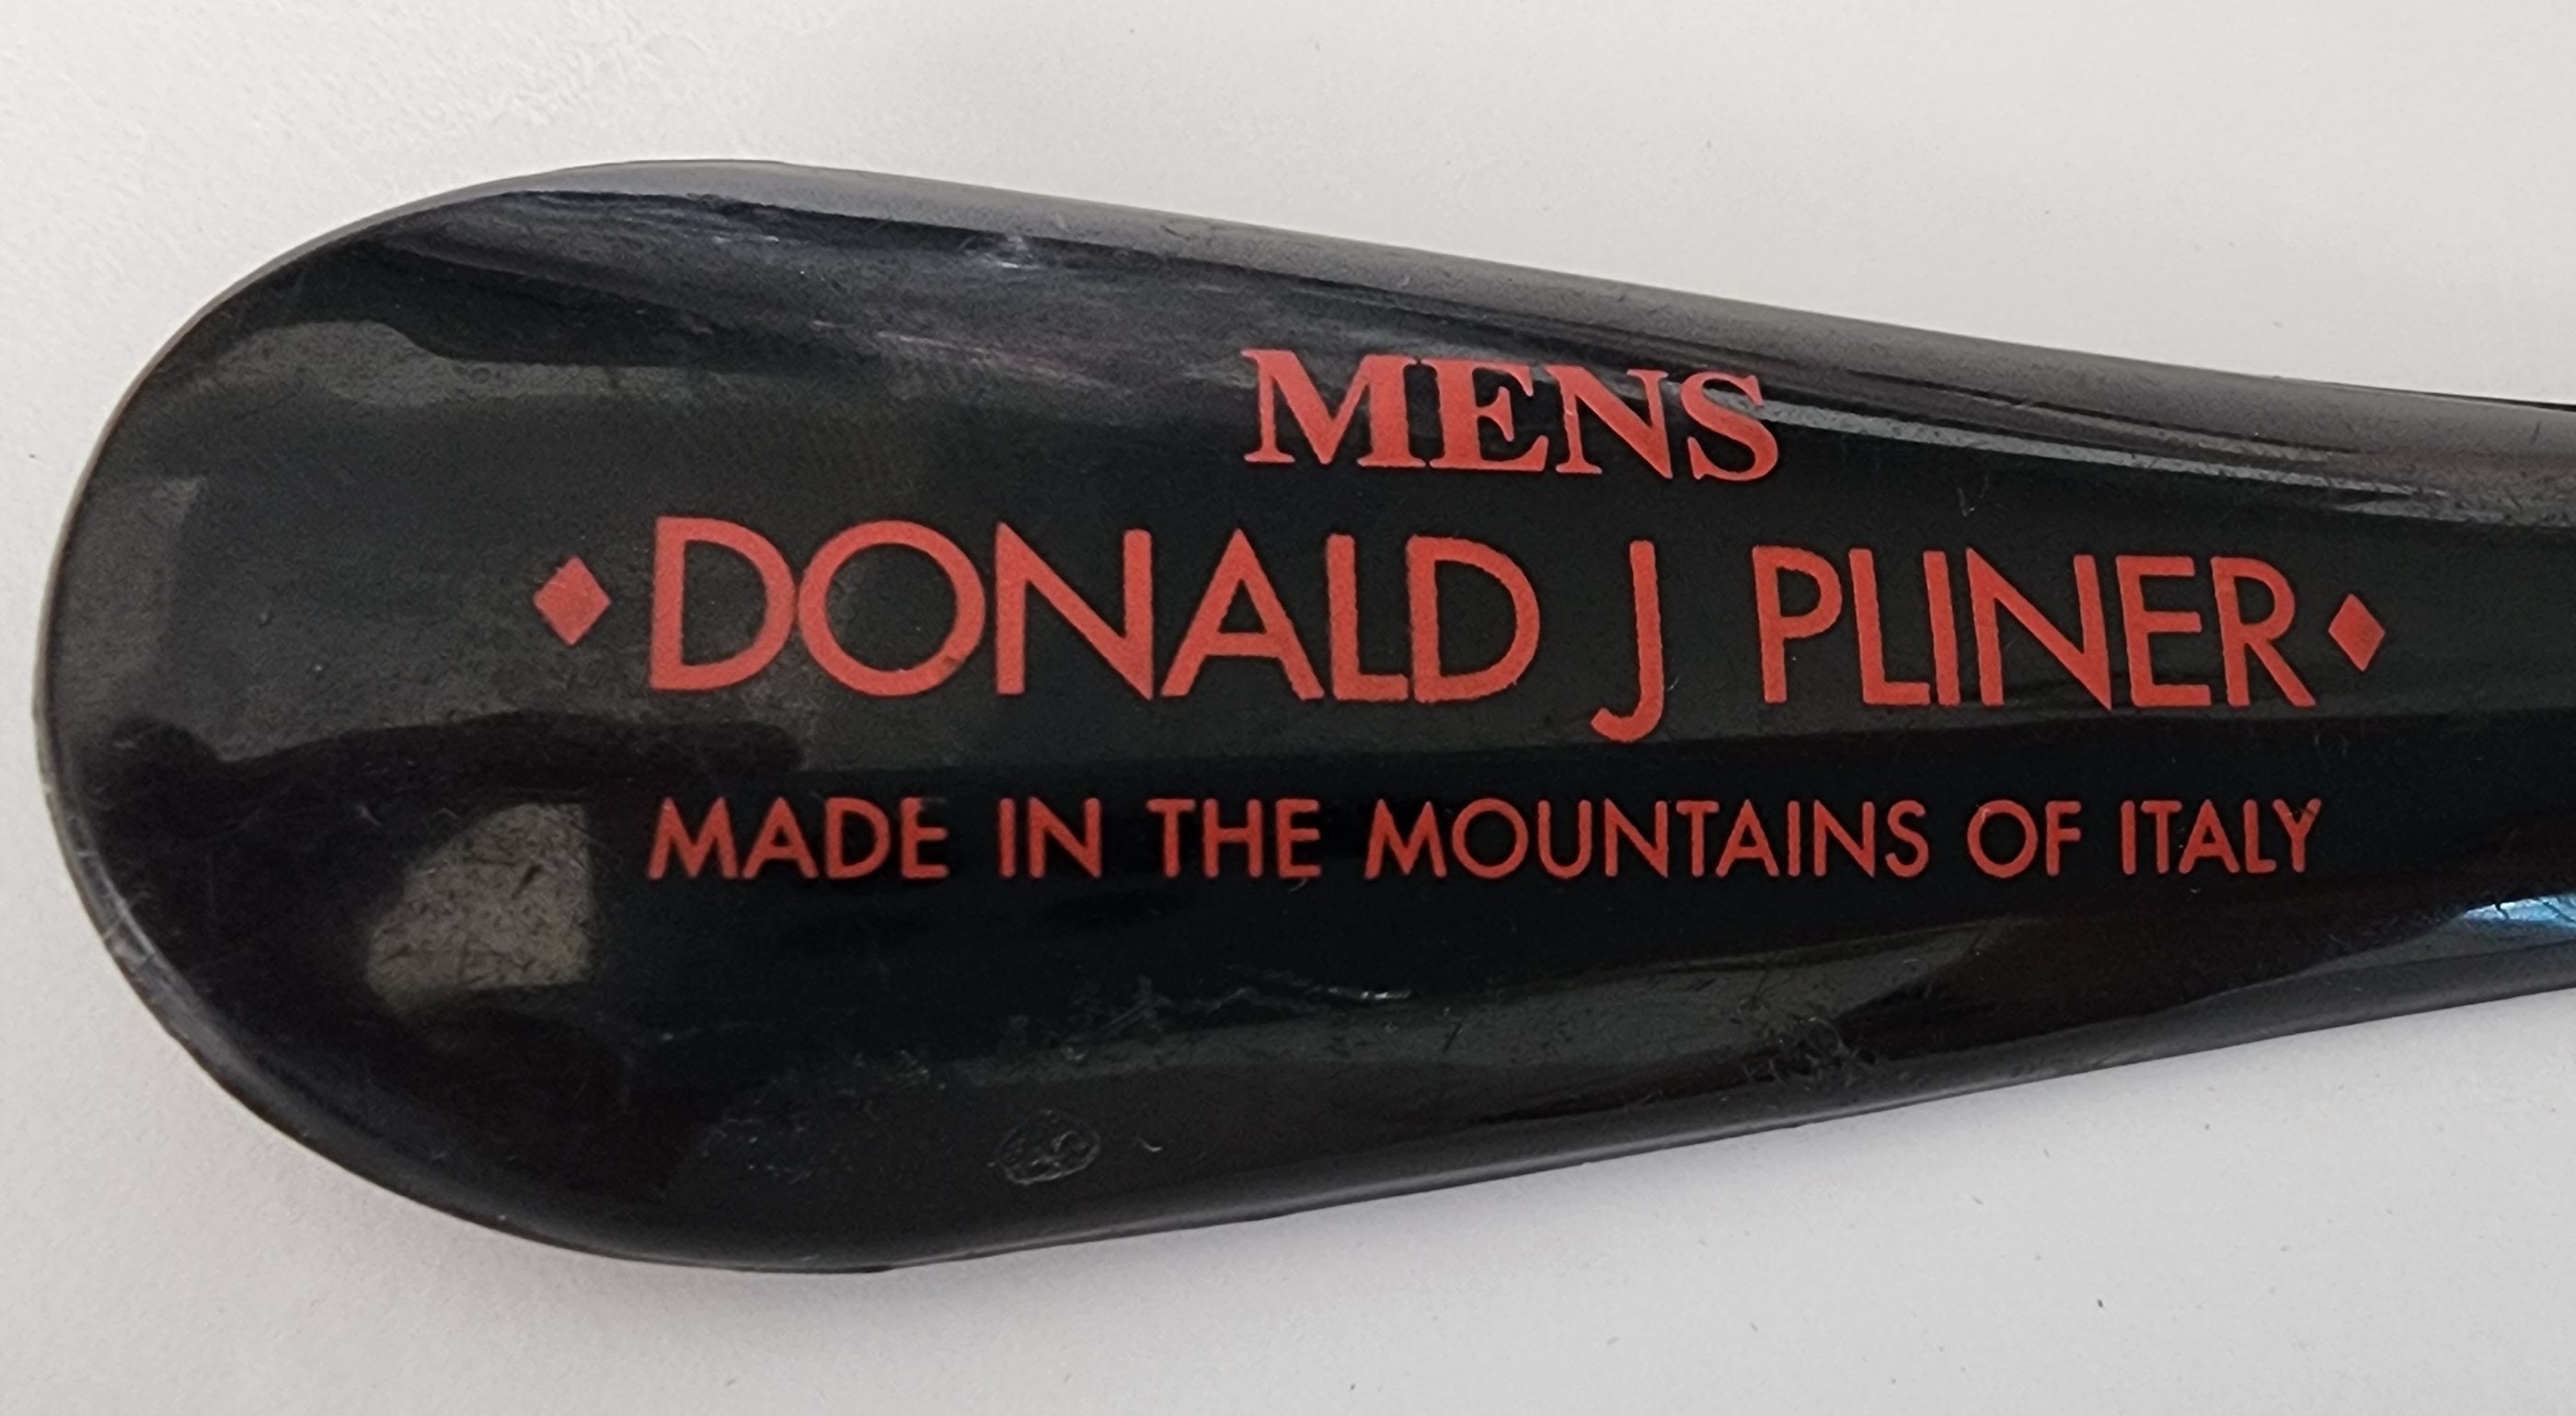 Chaussures Semelles intérieures et accessoires Chausse-pieds Vintage Men’s Donald J Pliner Shoe Horn en noir avec imprimé rouge Cornes de chaussures pour hommes Fabriqué dans les montagnes d’Italie 